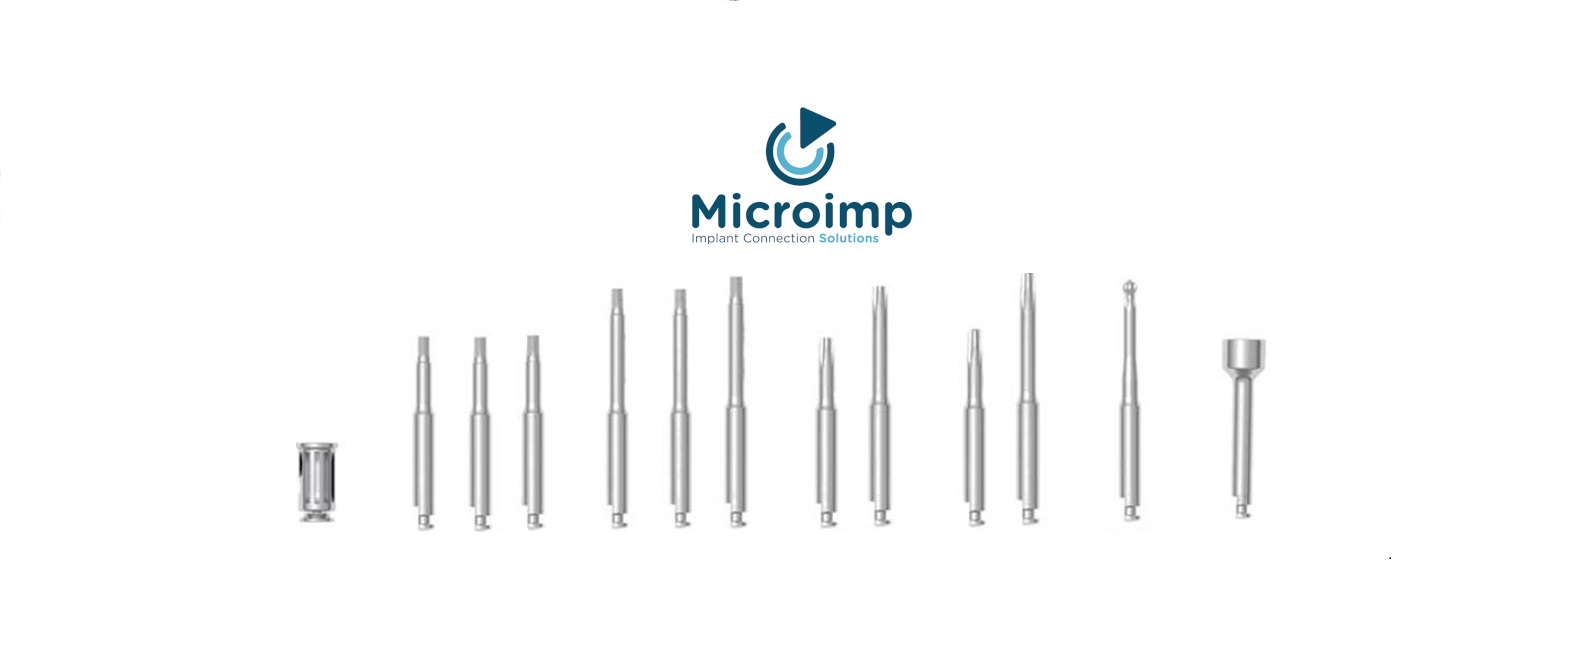 Microimp prodotti per l'implantologia